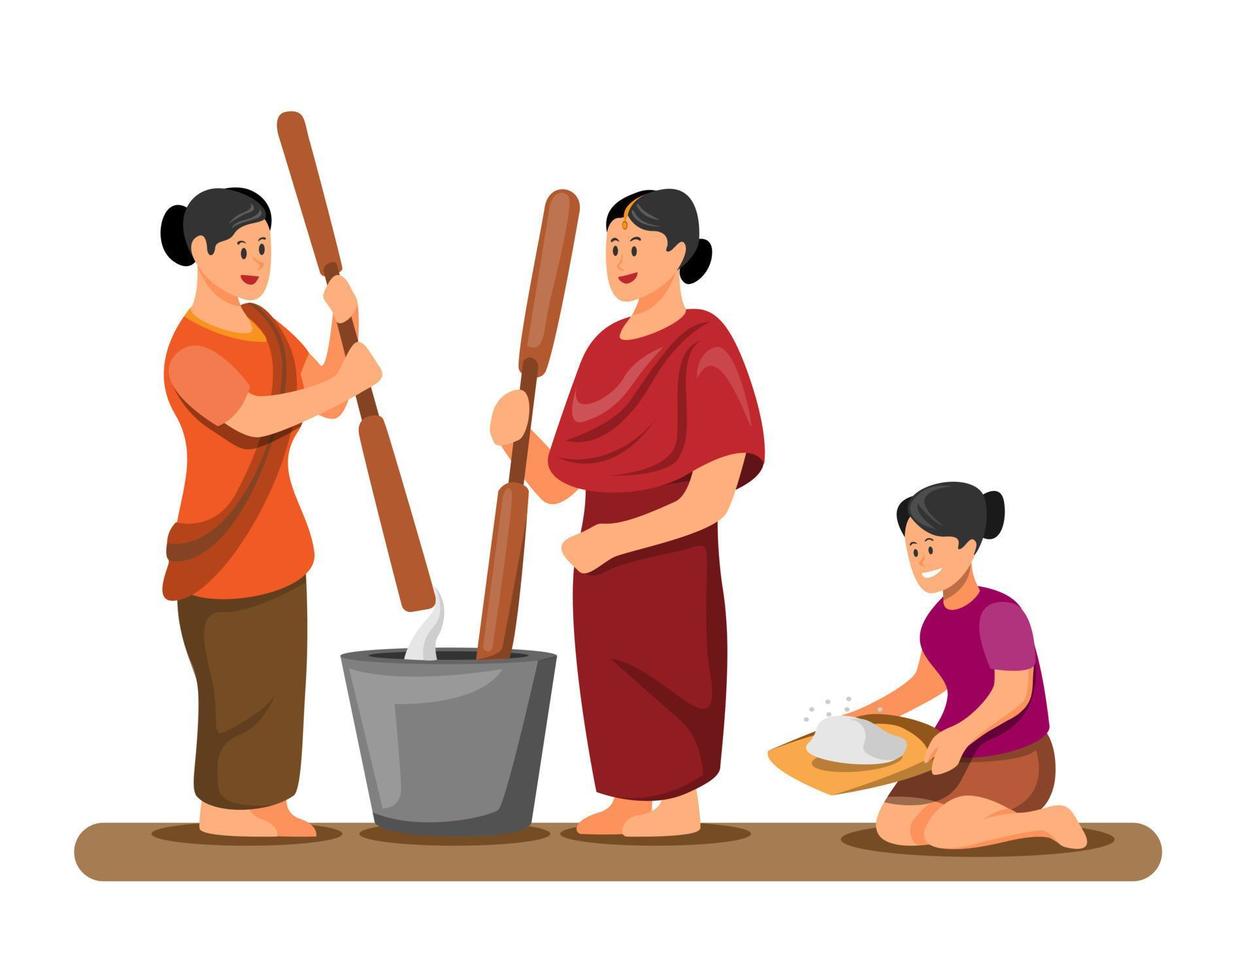 donna asiatica che batte e pulisce il riso attività tradizionale nel concetto del villaggio nel vettore dell'illustrazione del fumetto isolato nel fondo bianco